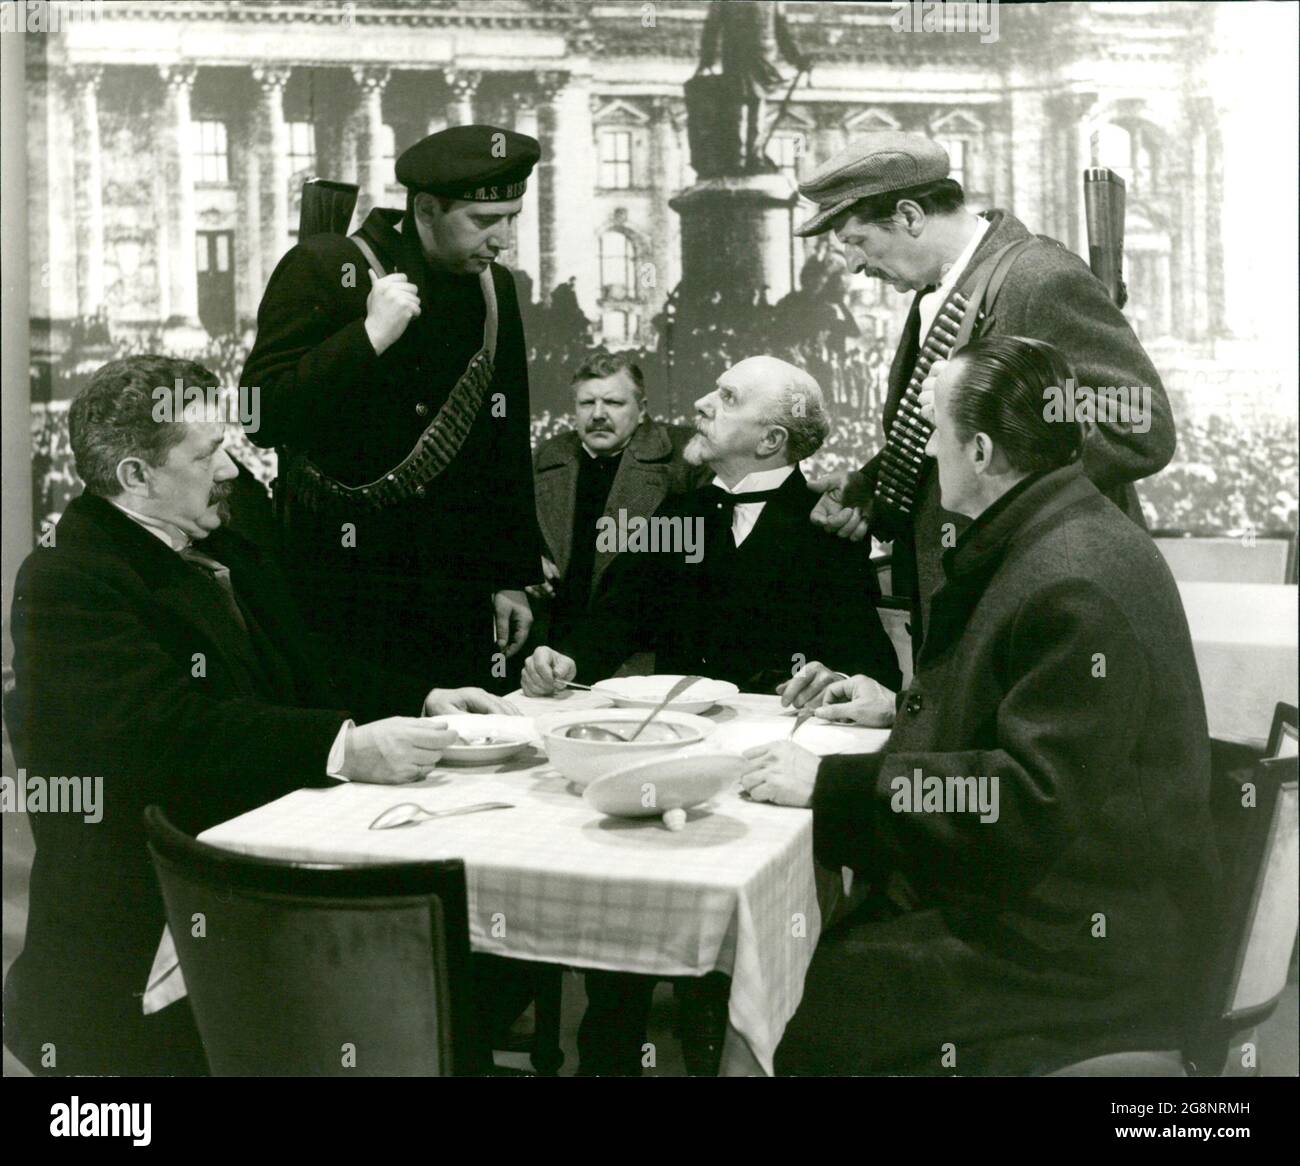 Zwei Spartakisten suchen Philipp Scheidemann (Kurt Rackelmann) auf, während er mit Ebert (Kurd Pieritz, l.) im Reichstag zu Mittag isst, um ihm mitzuteilen, dass Karl Liebknecht beabsichtige, in kürzester Zeit die Republik auszurufen. Stock Photo